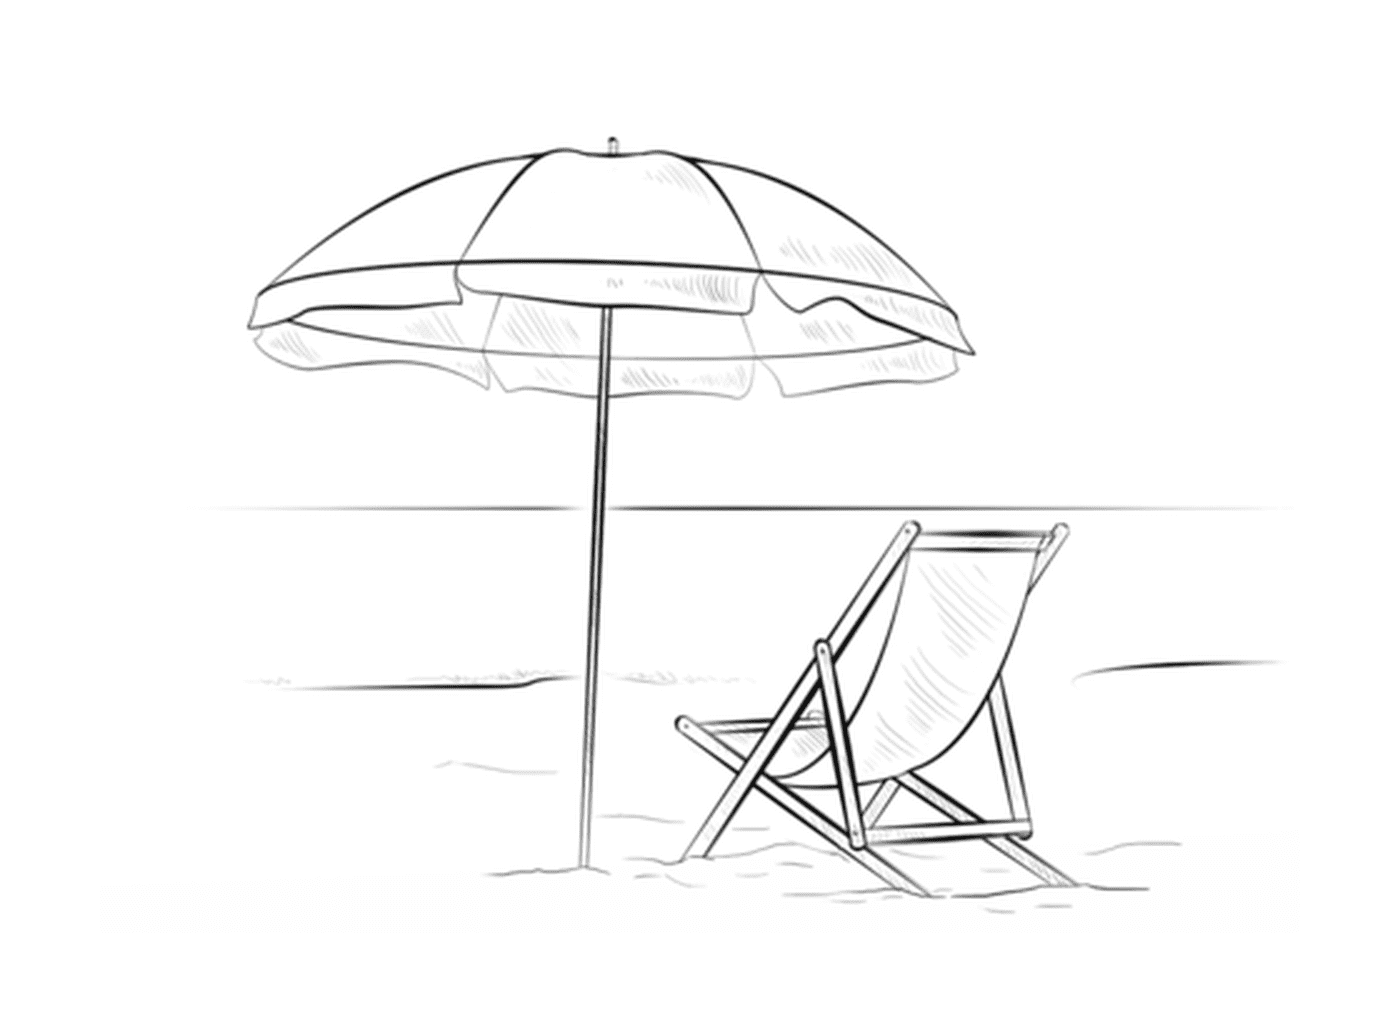  暑假期间,一只配有沙椅的阳伞 